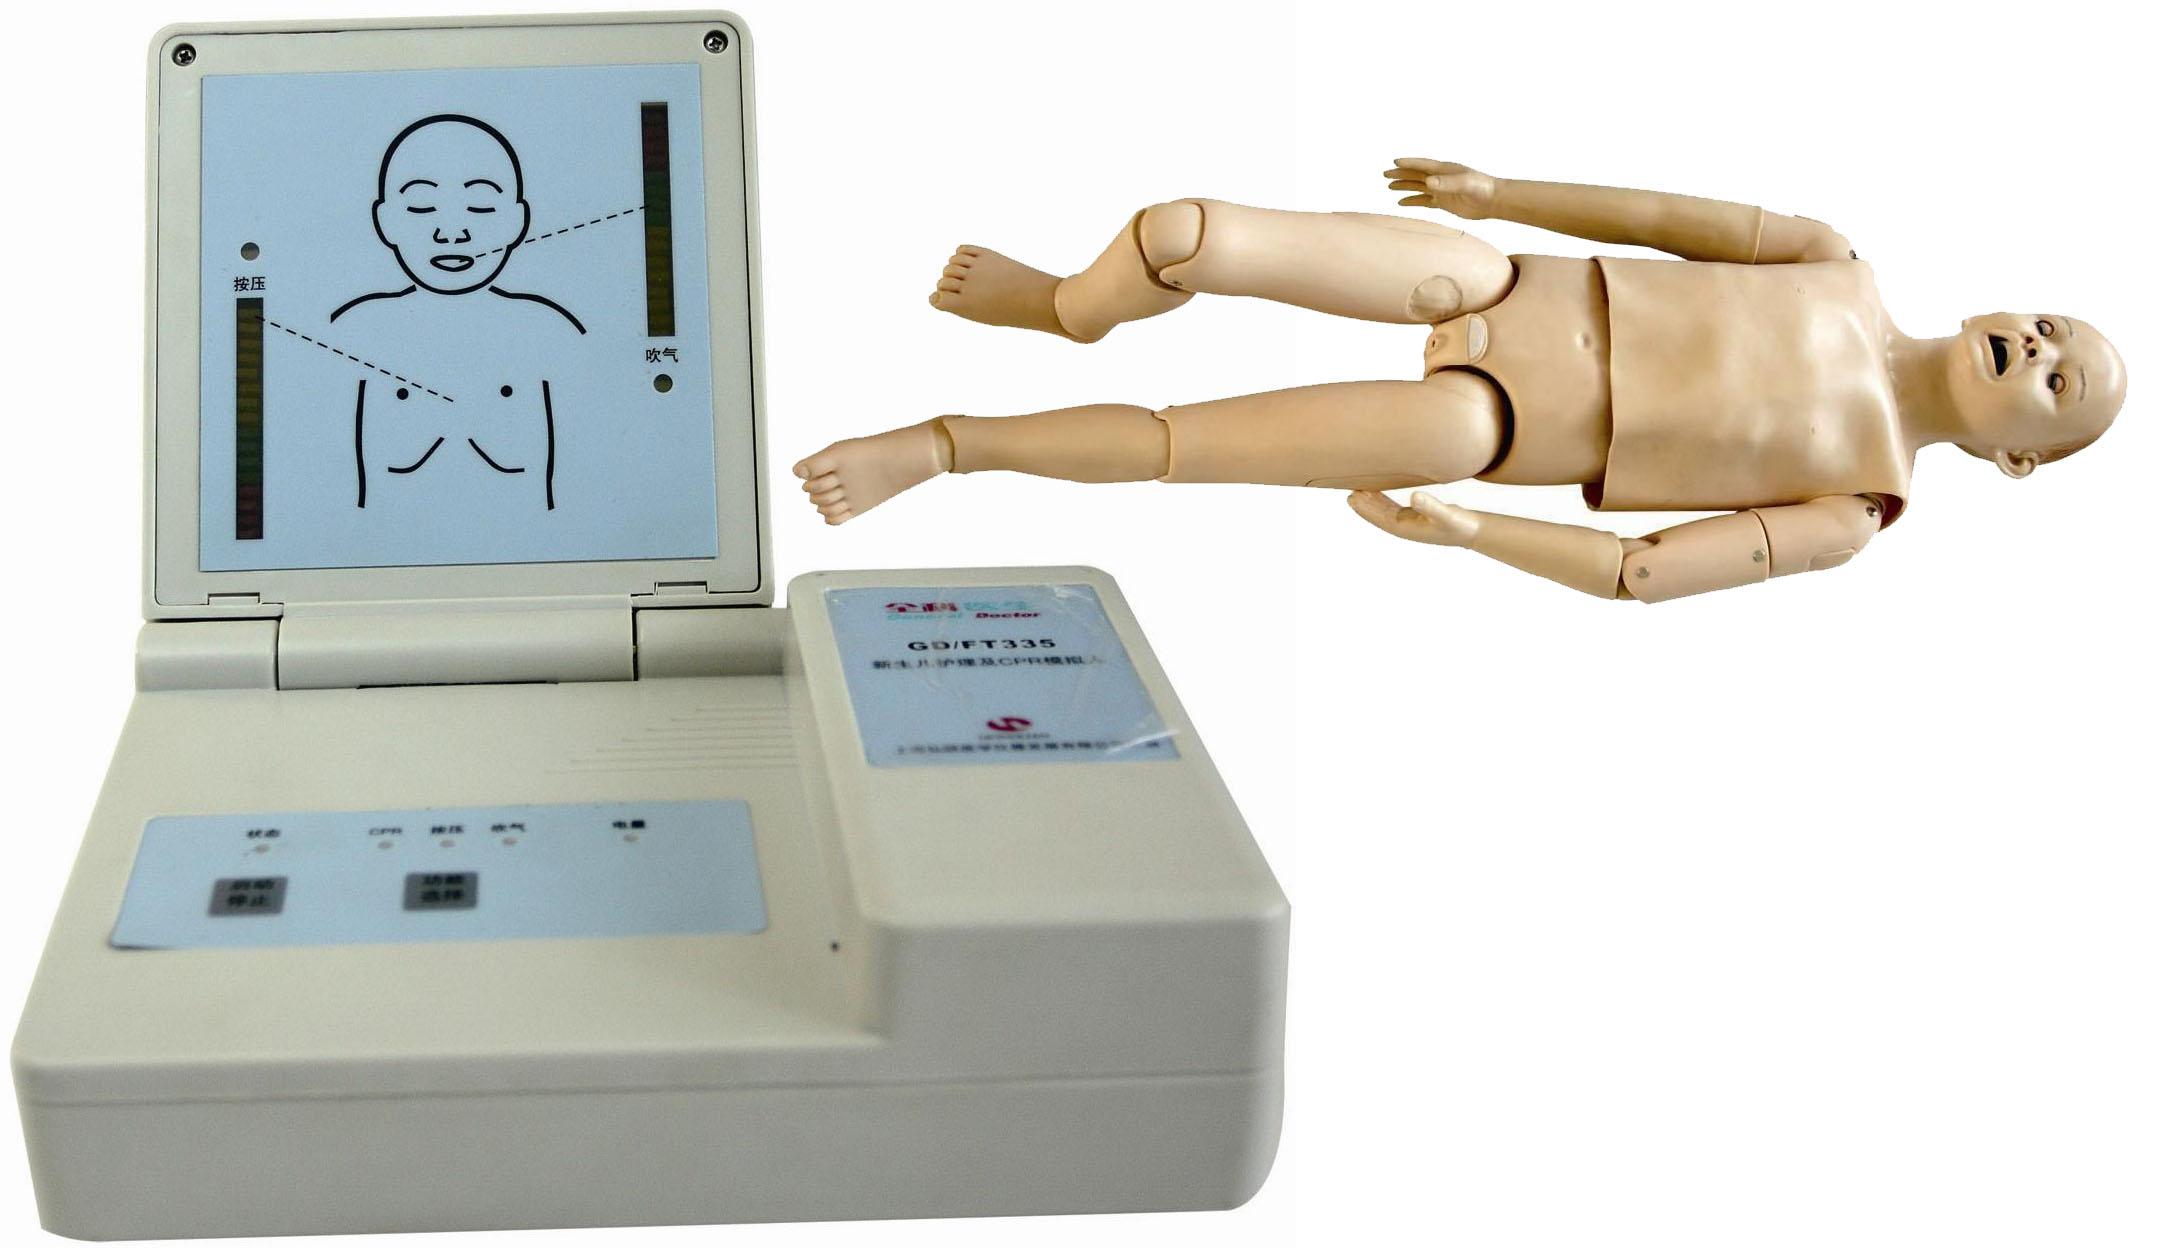 本系统提供儿童ACLS综合急救技能训练系统。模拟人根据五岁儿童解剖特征和生理特点而设计。适用于各大医院、医学院、卫校急救模拟操作。